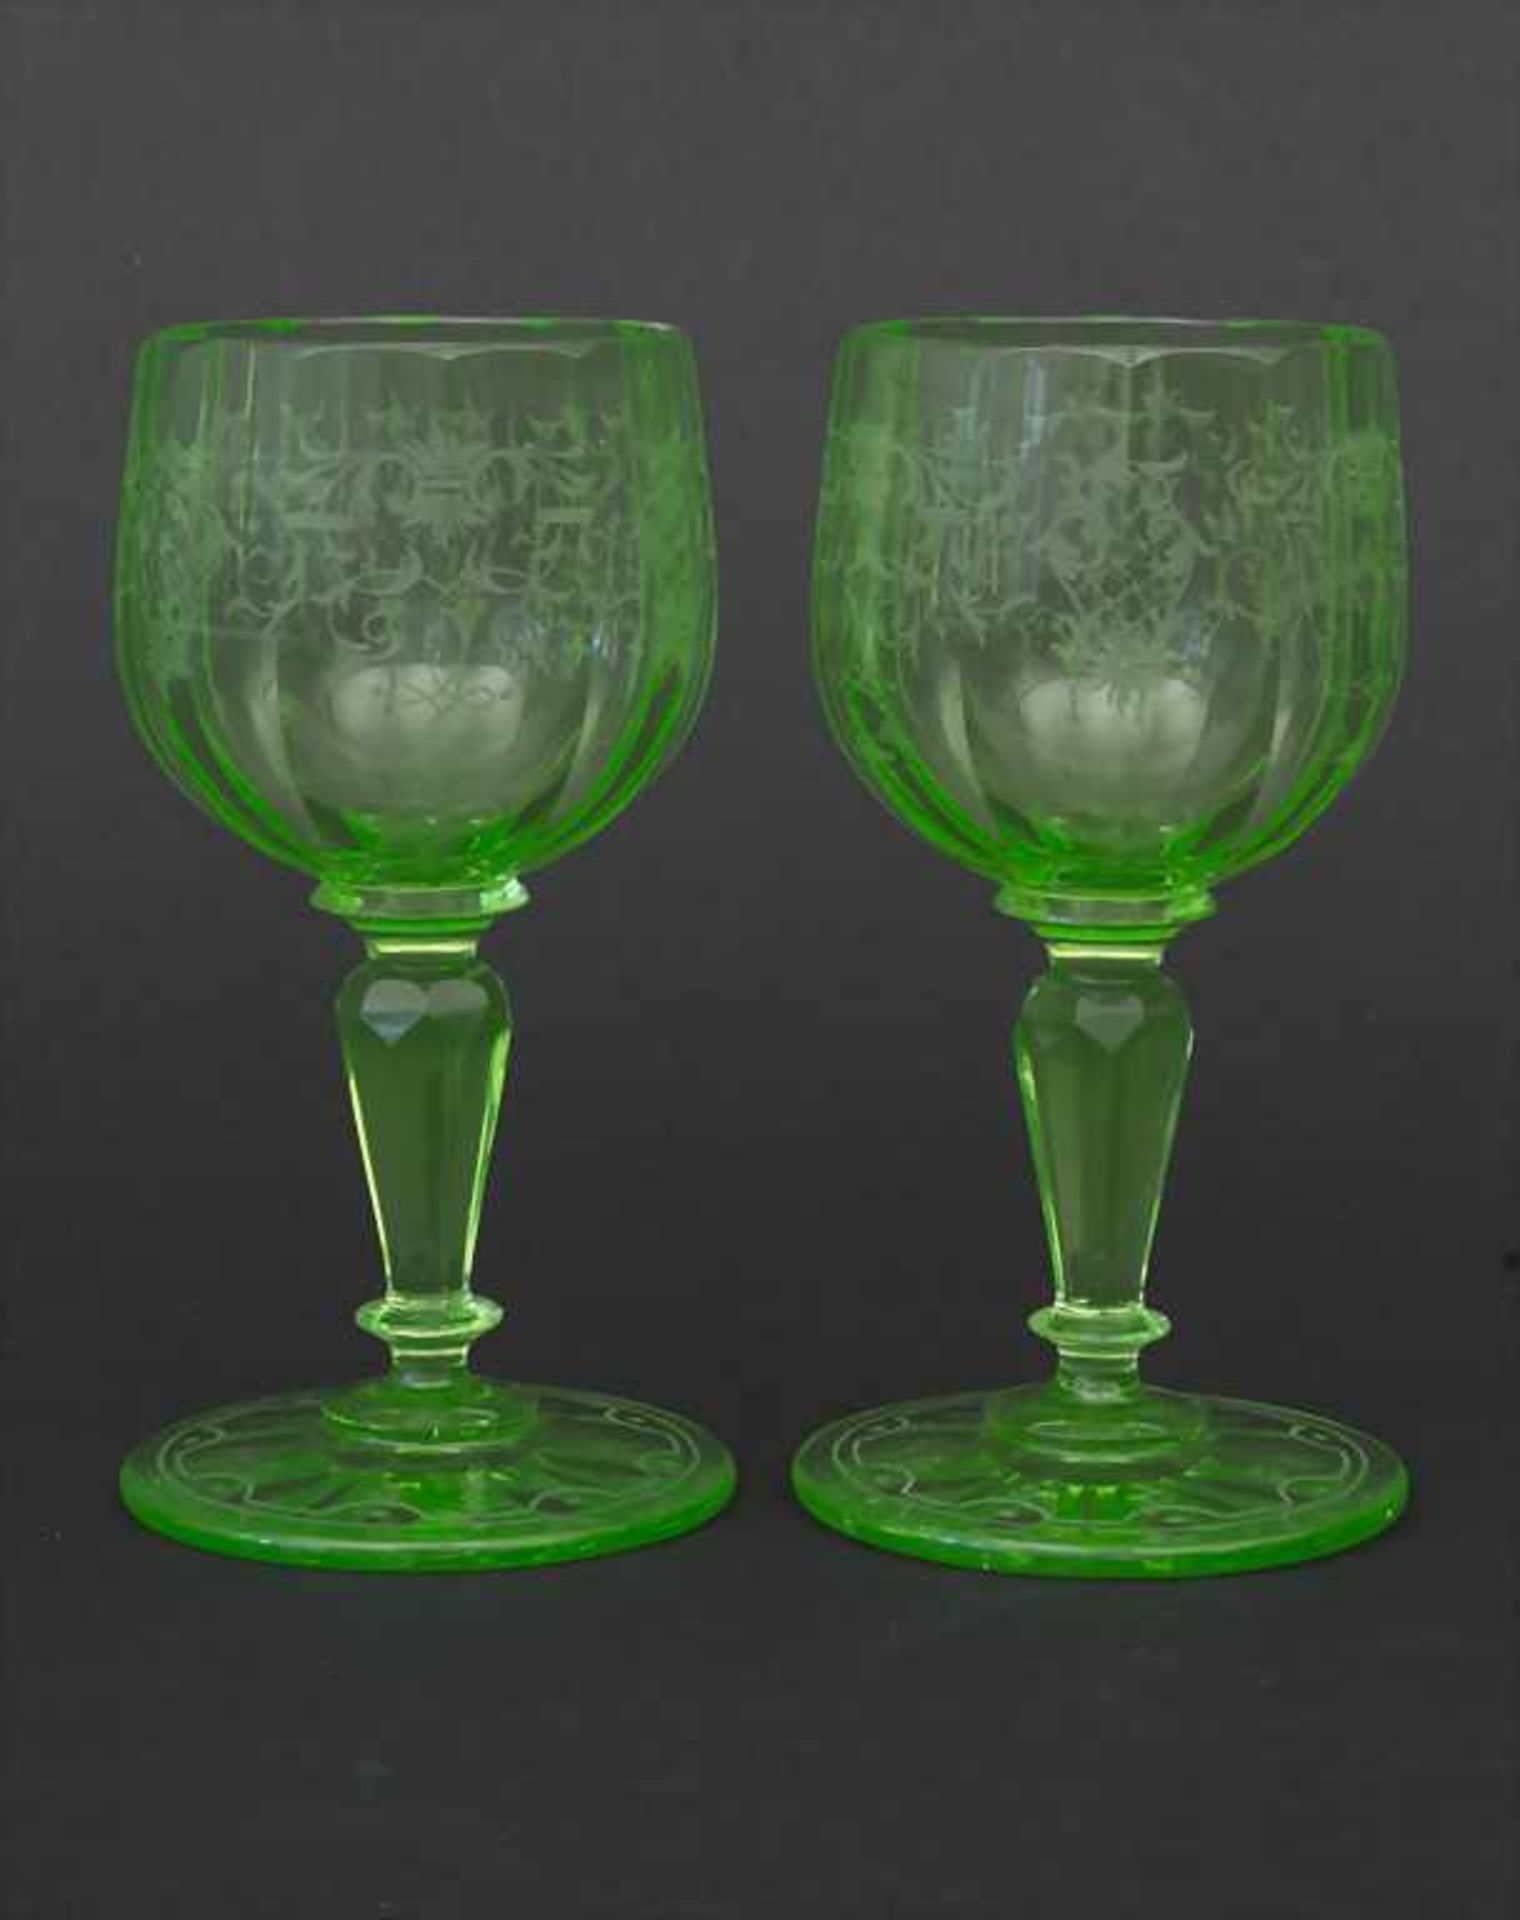 2 Urangläser / 2 uranium glasses, J. & L. Lobmeyr, Wien, um 1880Material: grünes Uranglas mit 12-